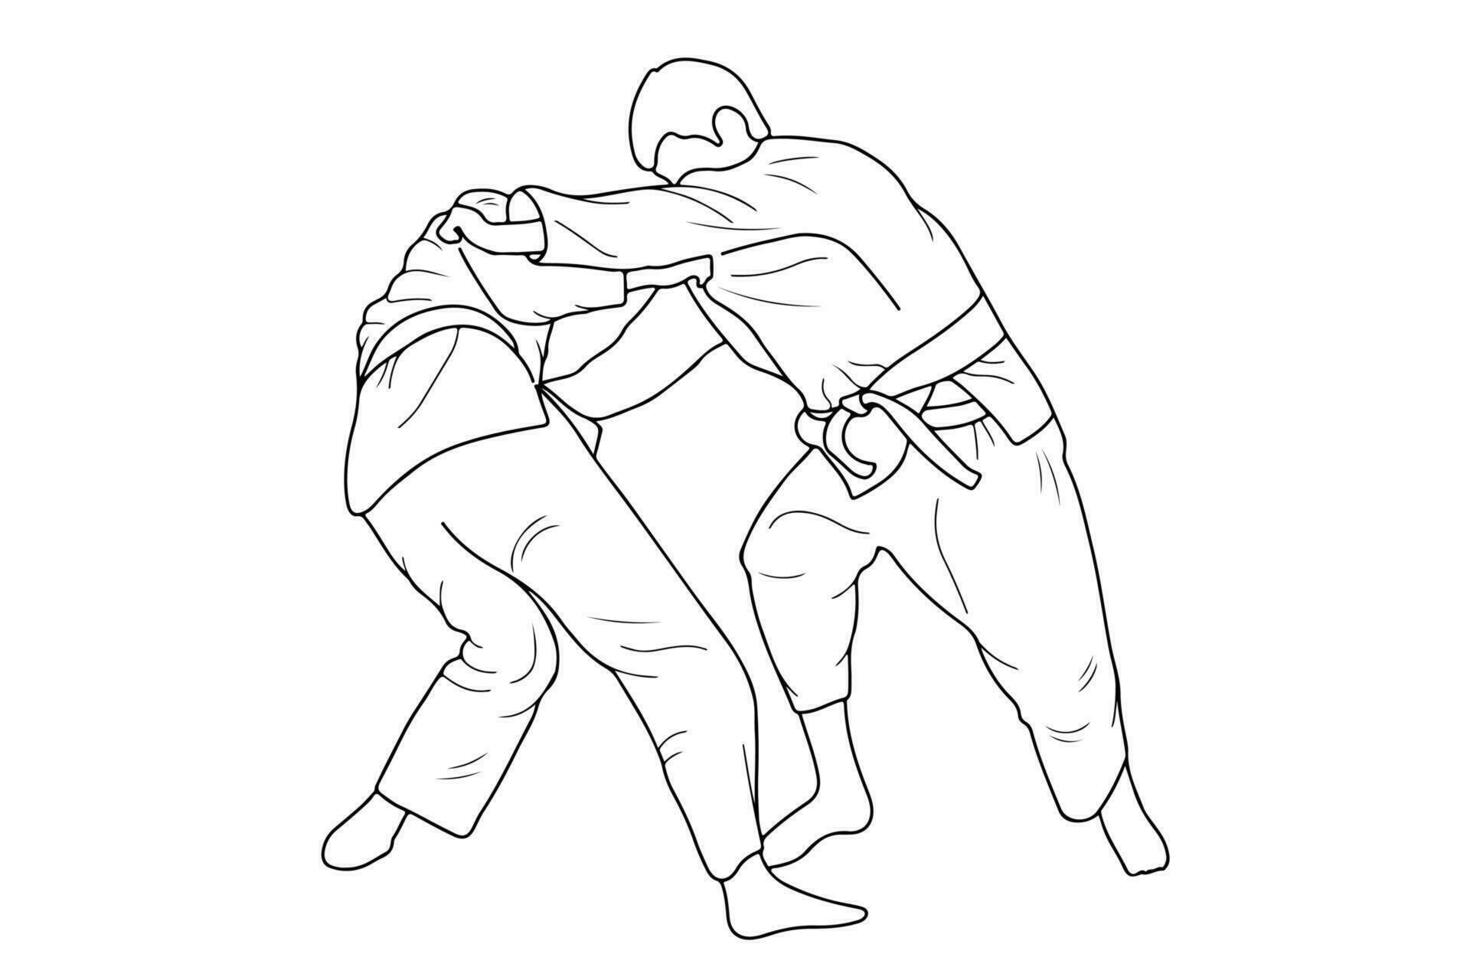 linea disegno di Due giovane allegro judoka combattente. judoista, judoka, atleta, duello, combattere, judo vettore